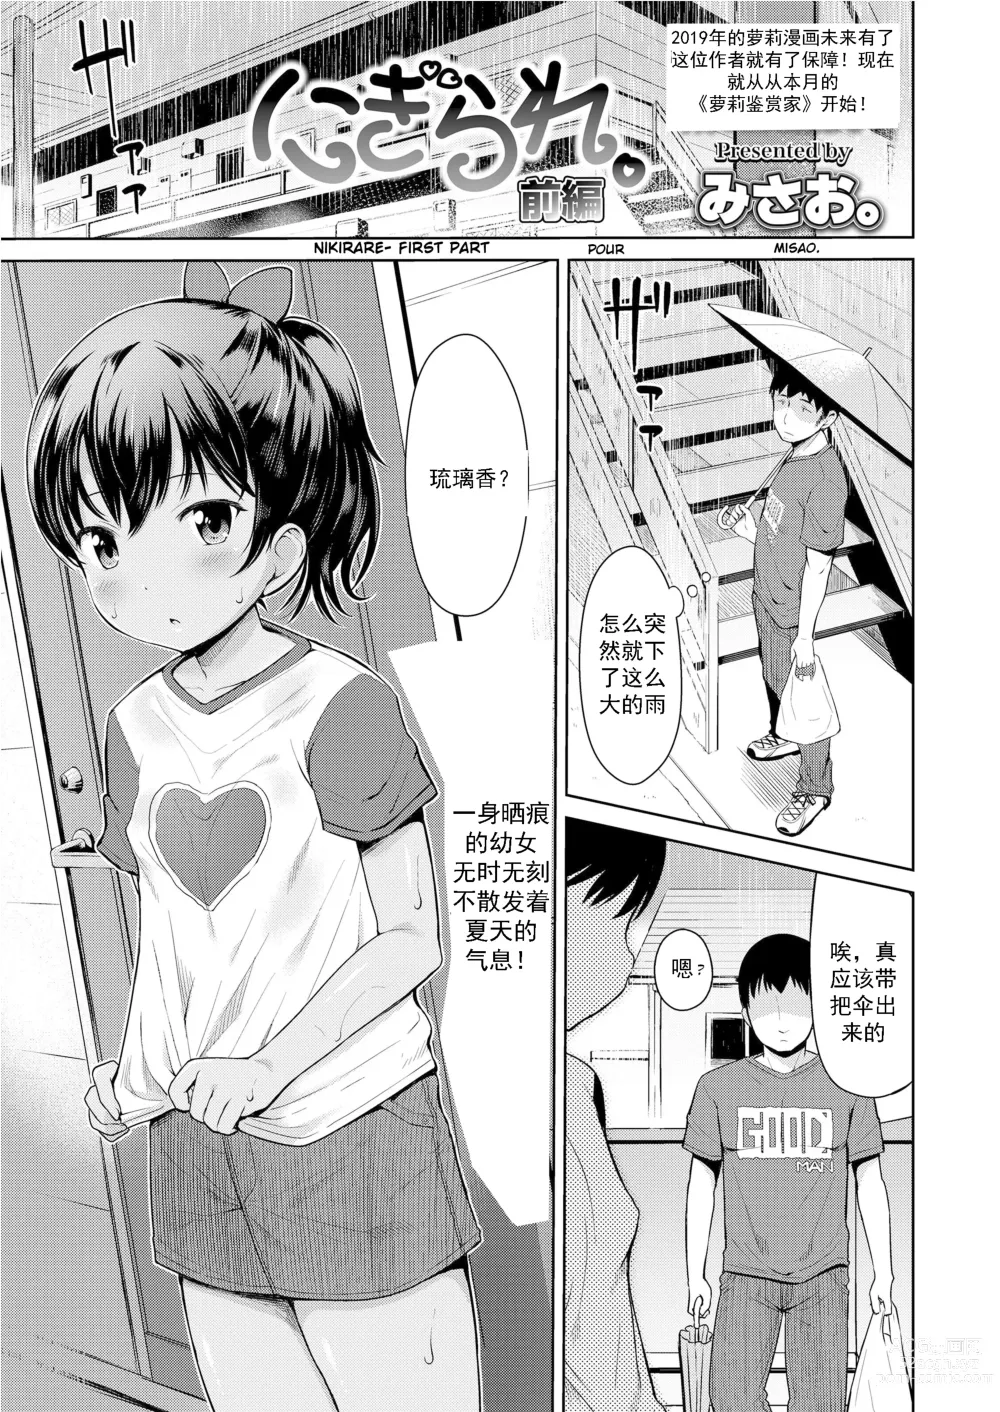 Page 2 of manga Nigirare. Zenpen